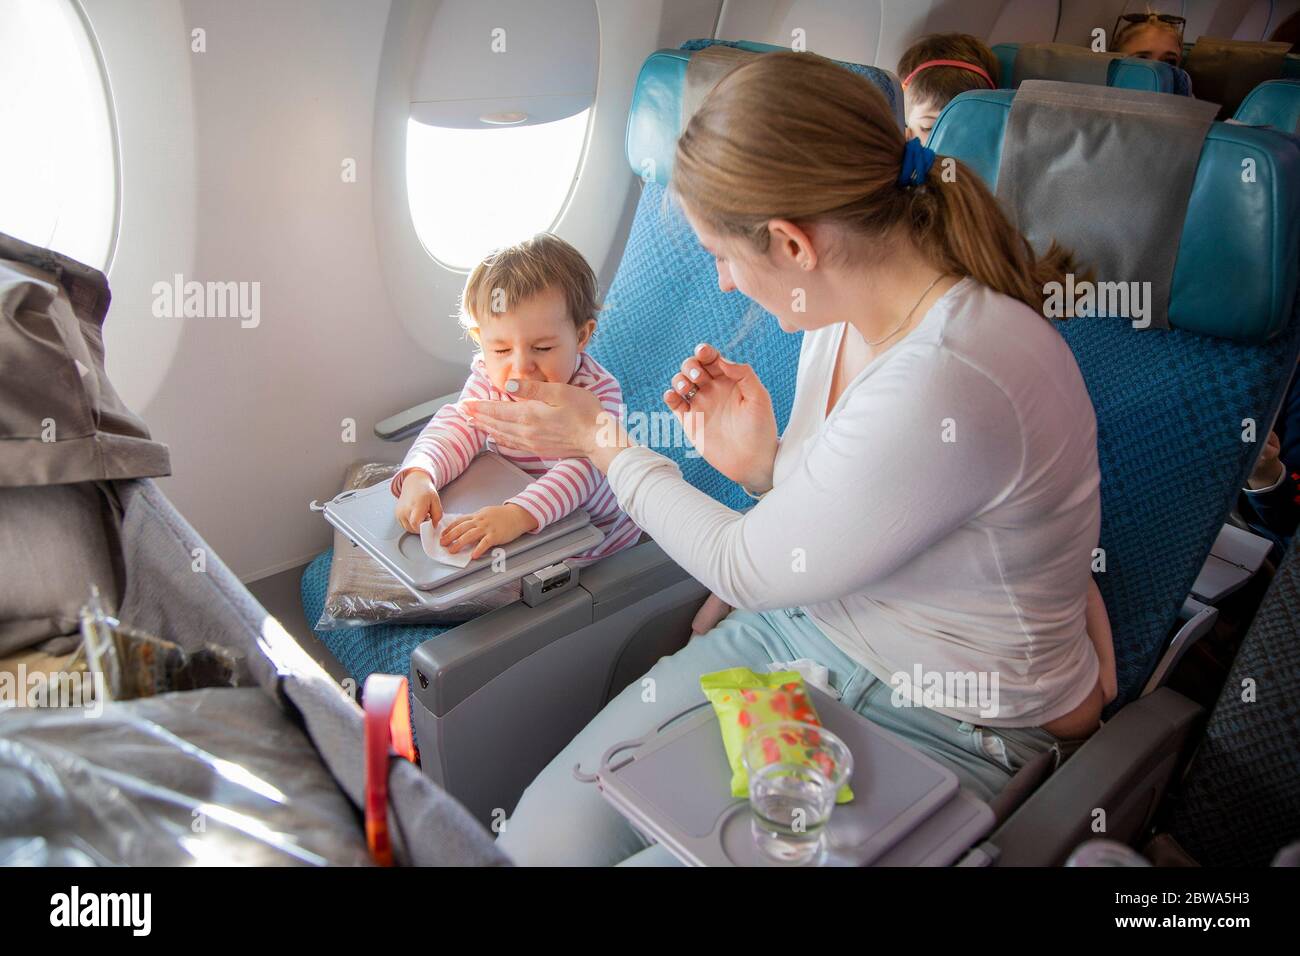 Kleines süßes Kleinkind Mädchen sitzt in einem Flugzeug in einem Stuhl am Bullauge, hält ein nasses Handtuch in den Händen und niest. Mama sitzt in der Nähe und bedeckt sie Stockfoto